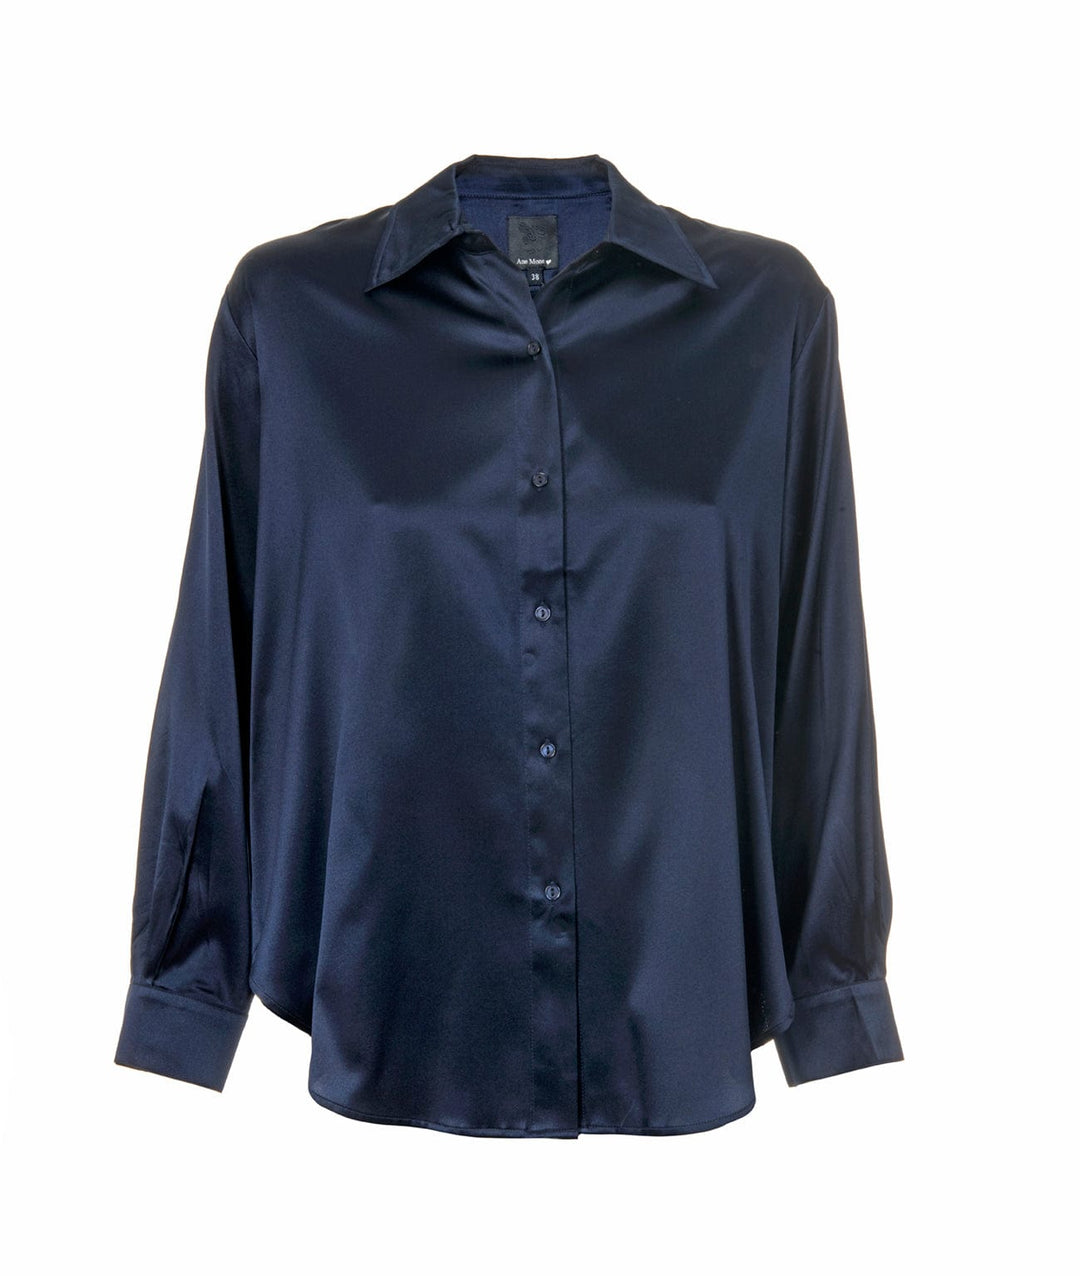 Oline Blouse Navy | Skjorter og bluser | Smuk - Dameklær på nett